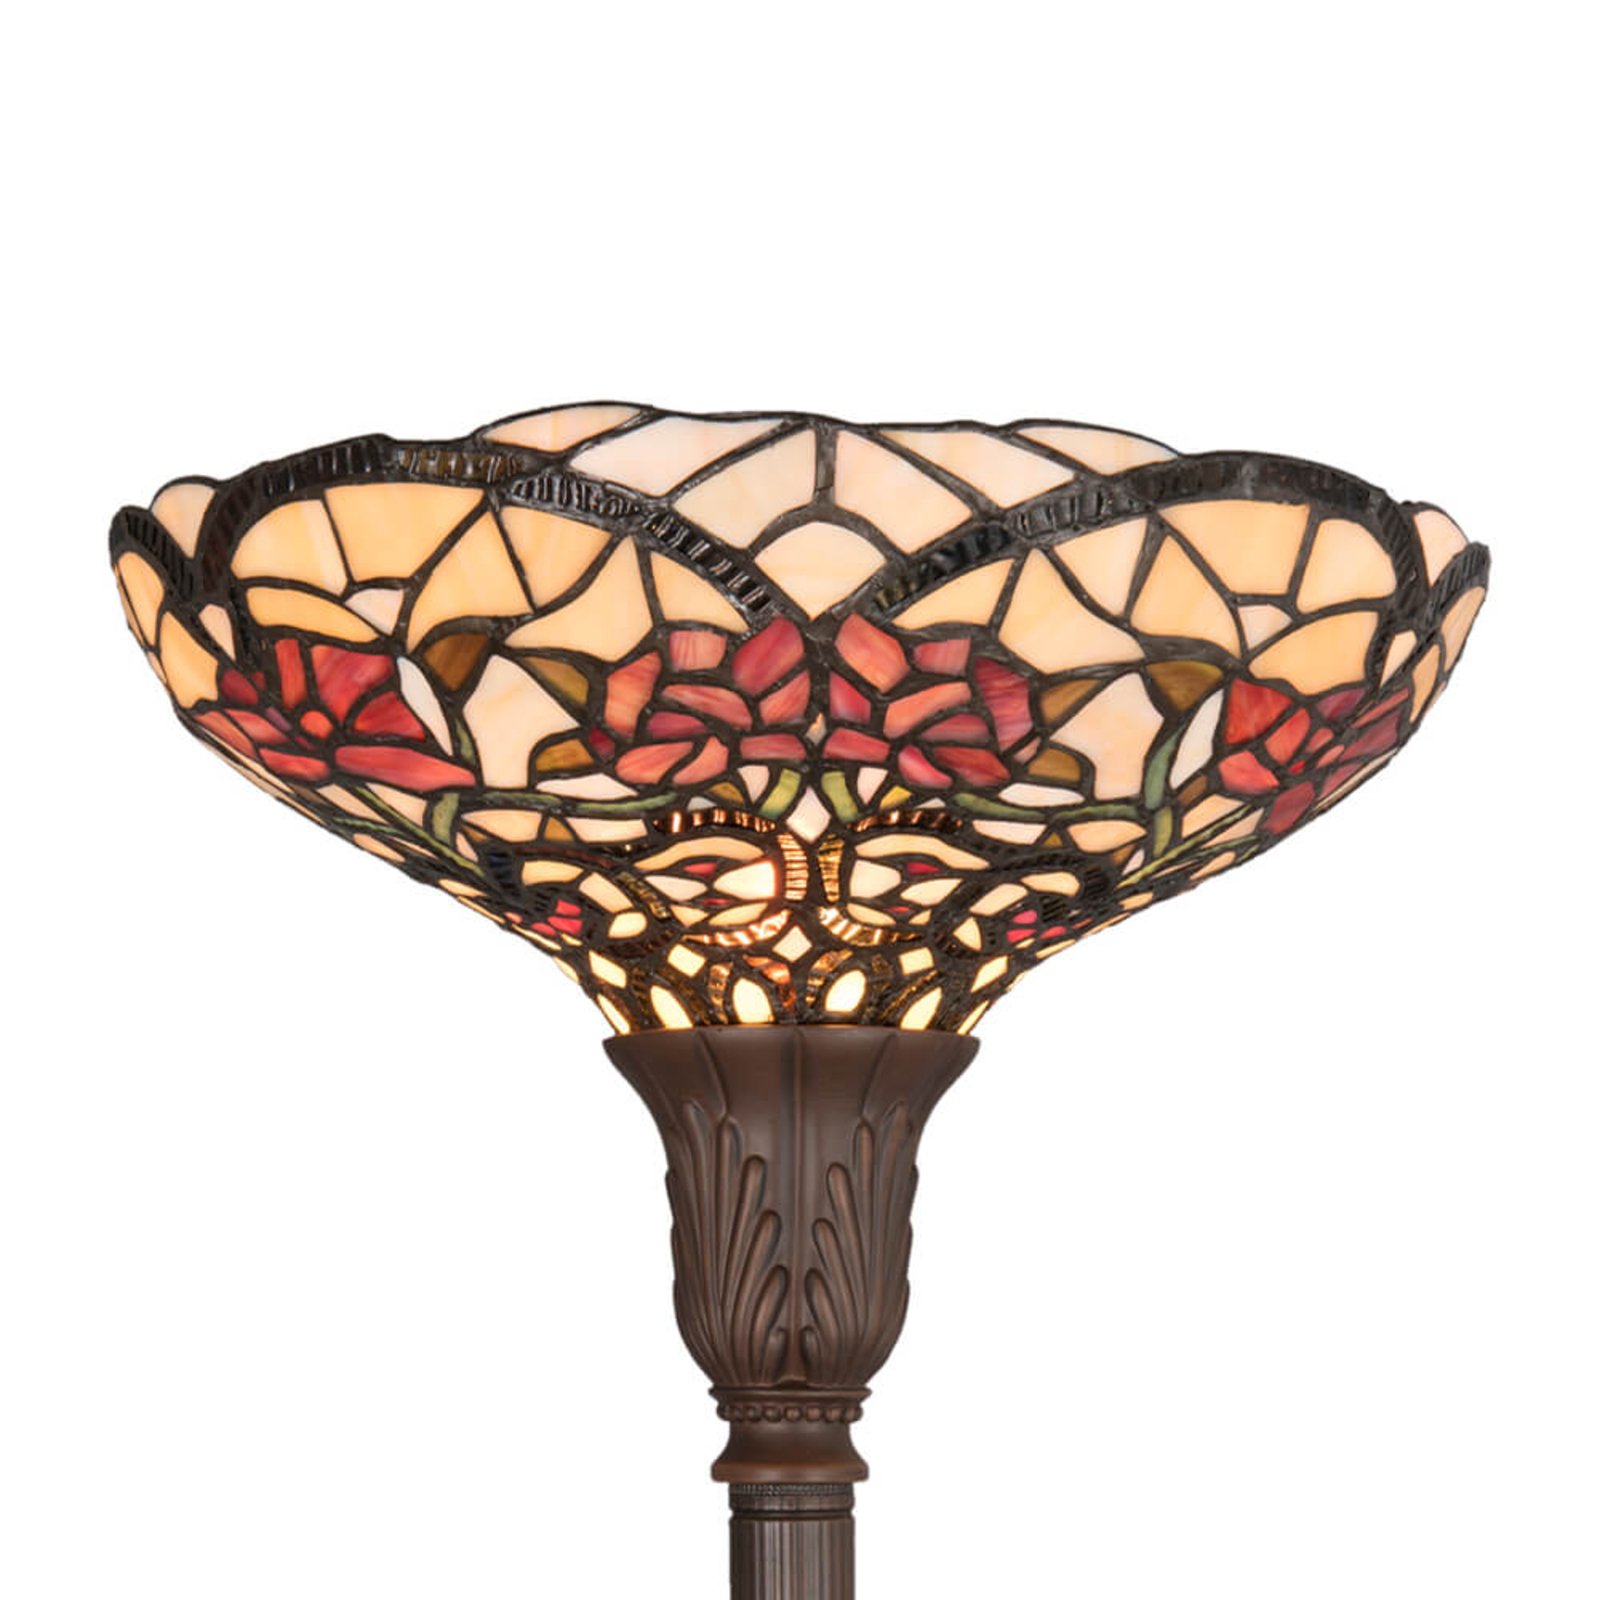 Proljetna podna lampa Kayla u Tiffany stilu